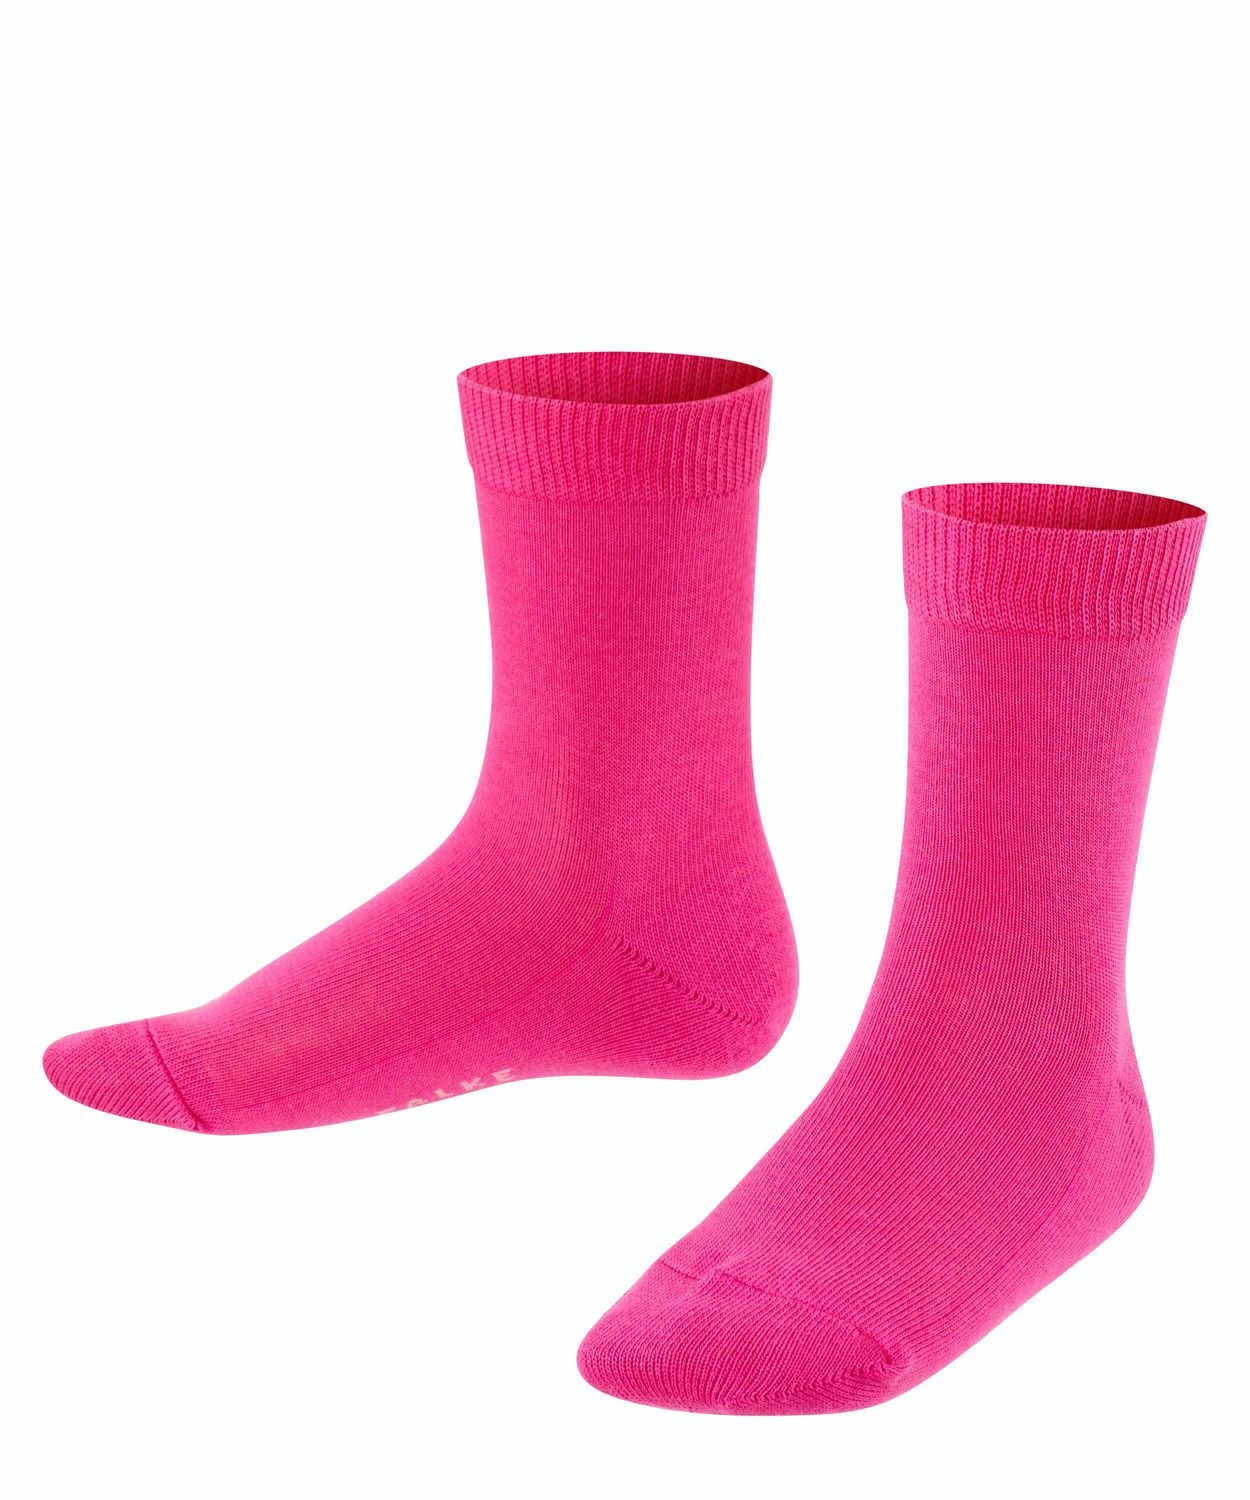 Falke Kinder Socken Family Hersteller: Falke Bestellnummer:4004757185290